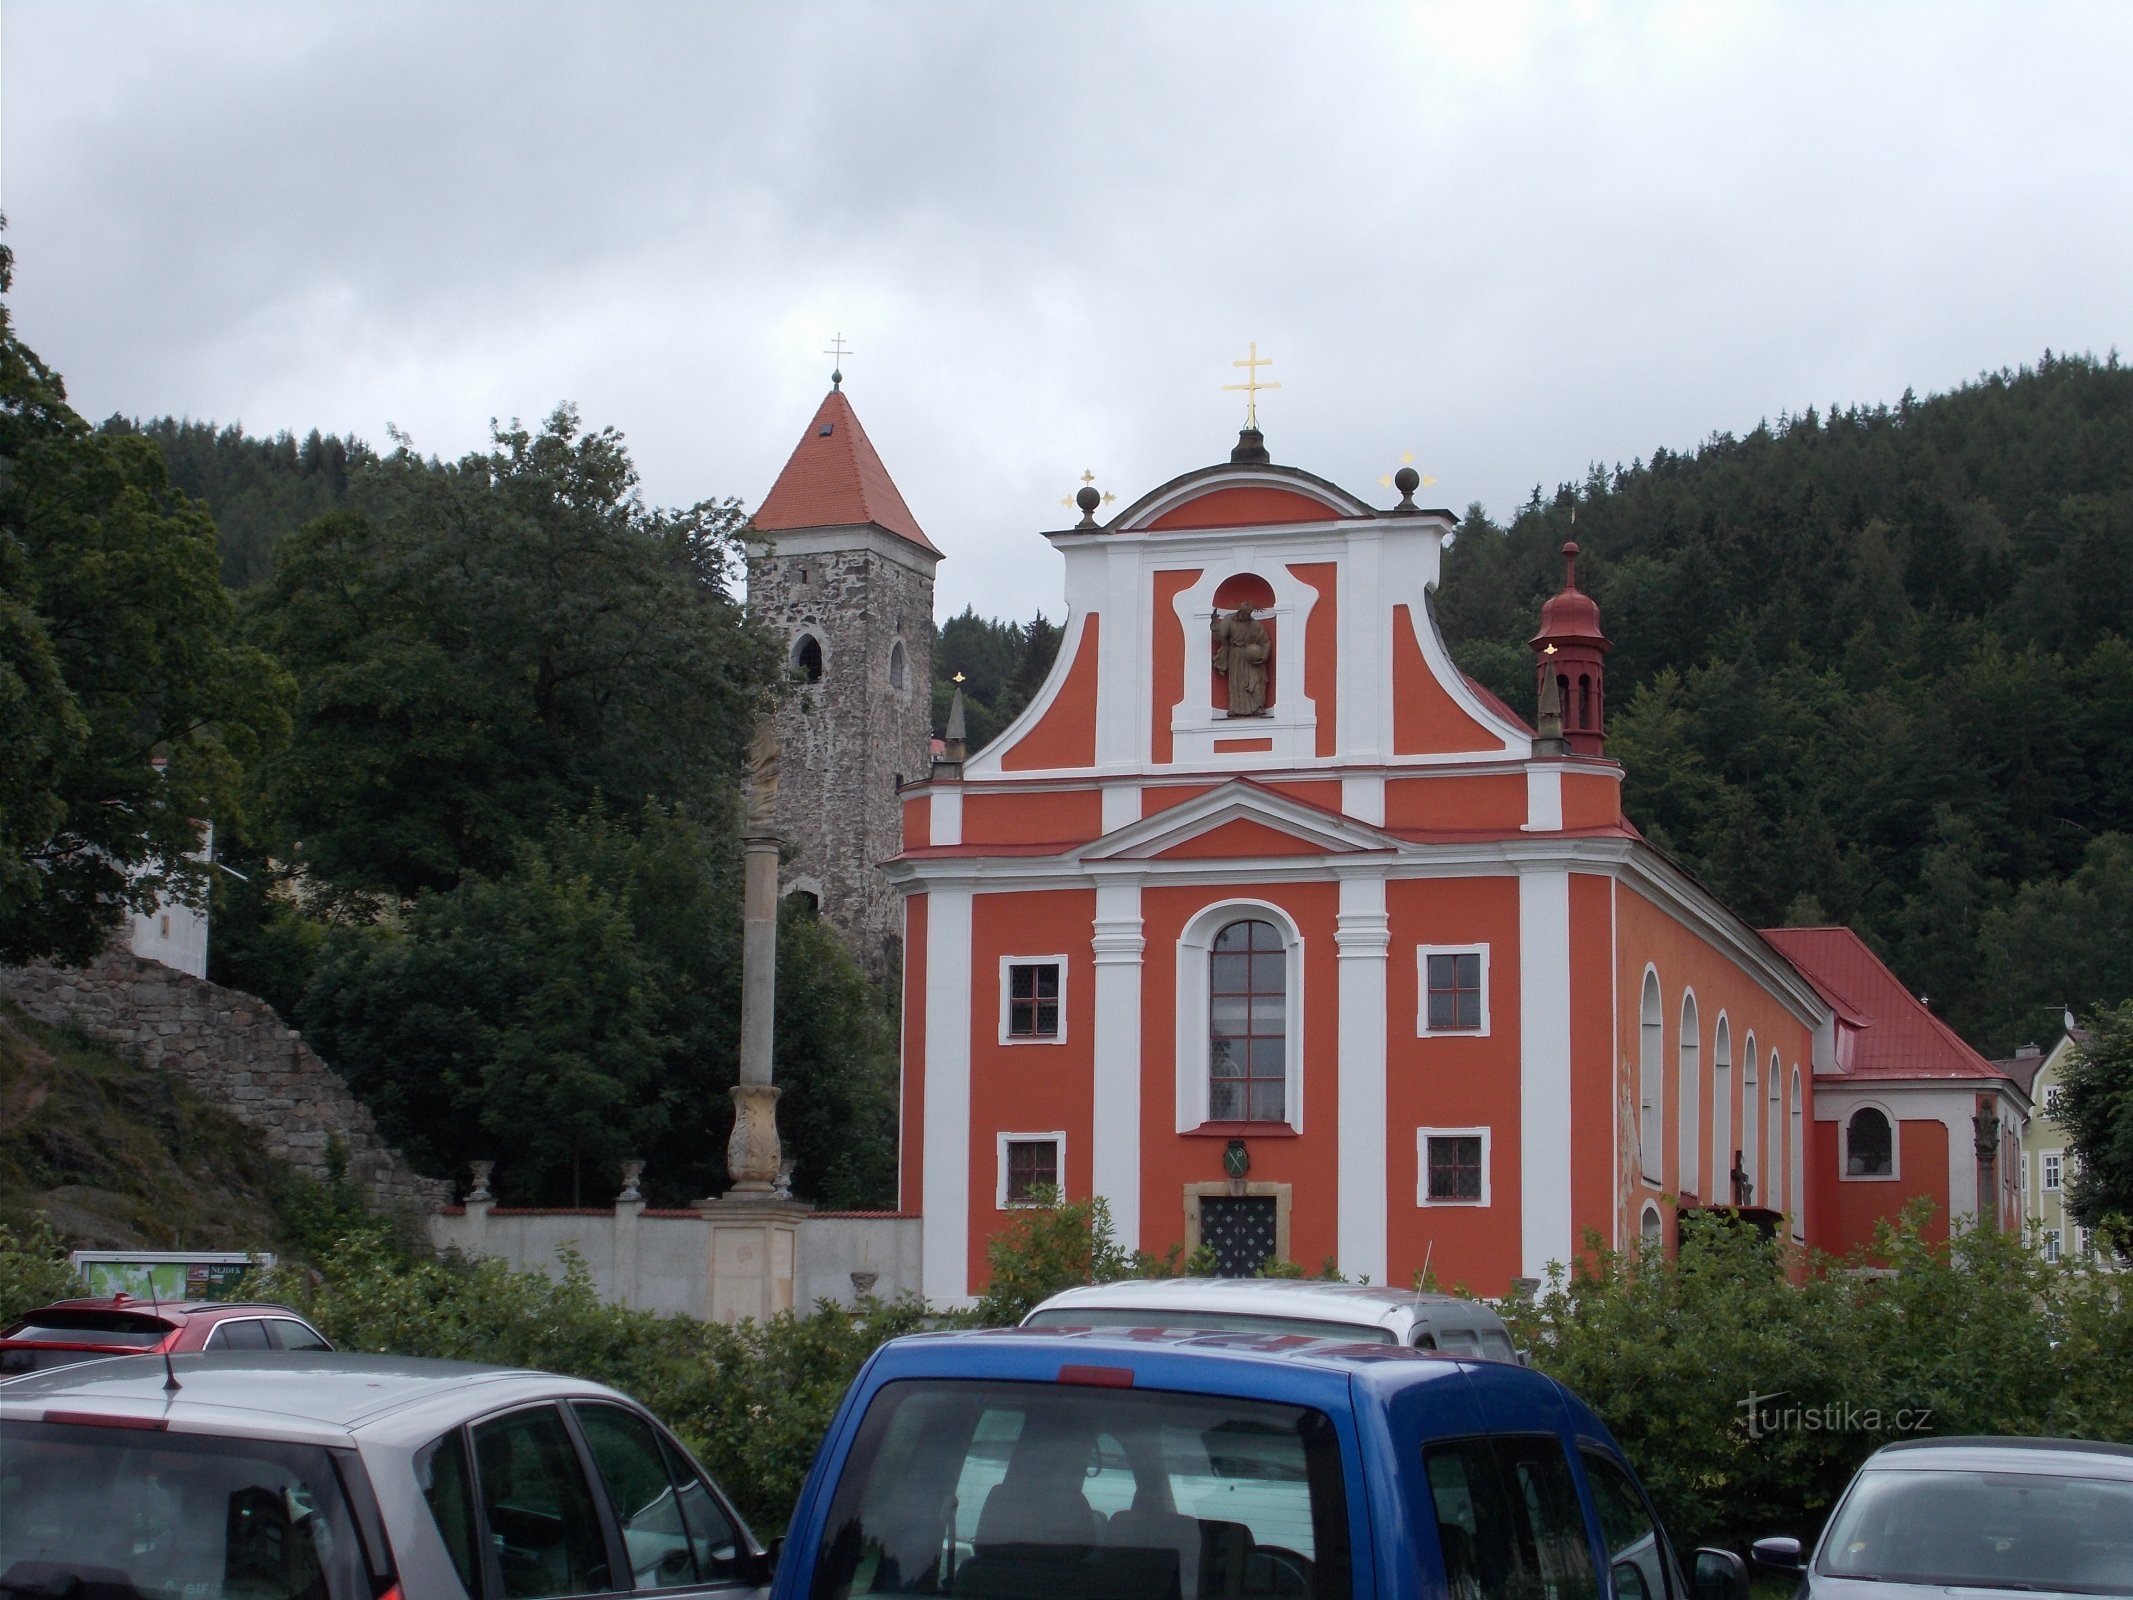 Nejdek - εκκλησία του Αγ. Martin και τα ερείπια του κάστρου